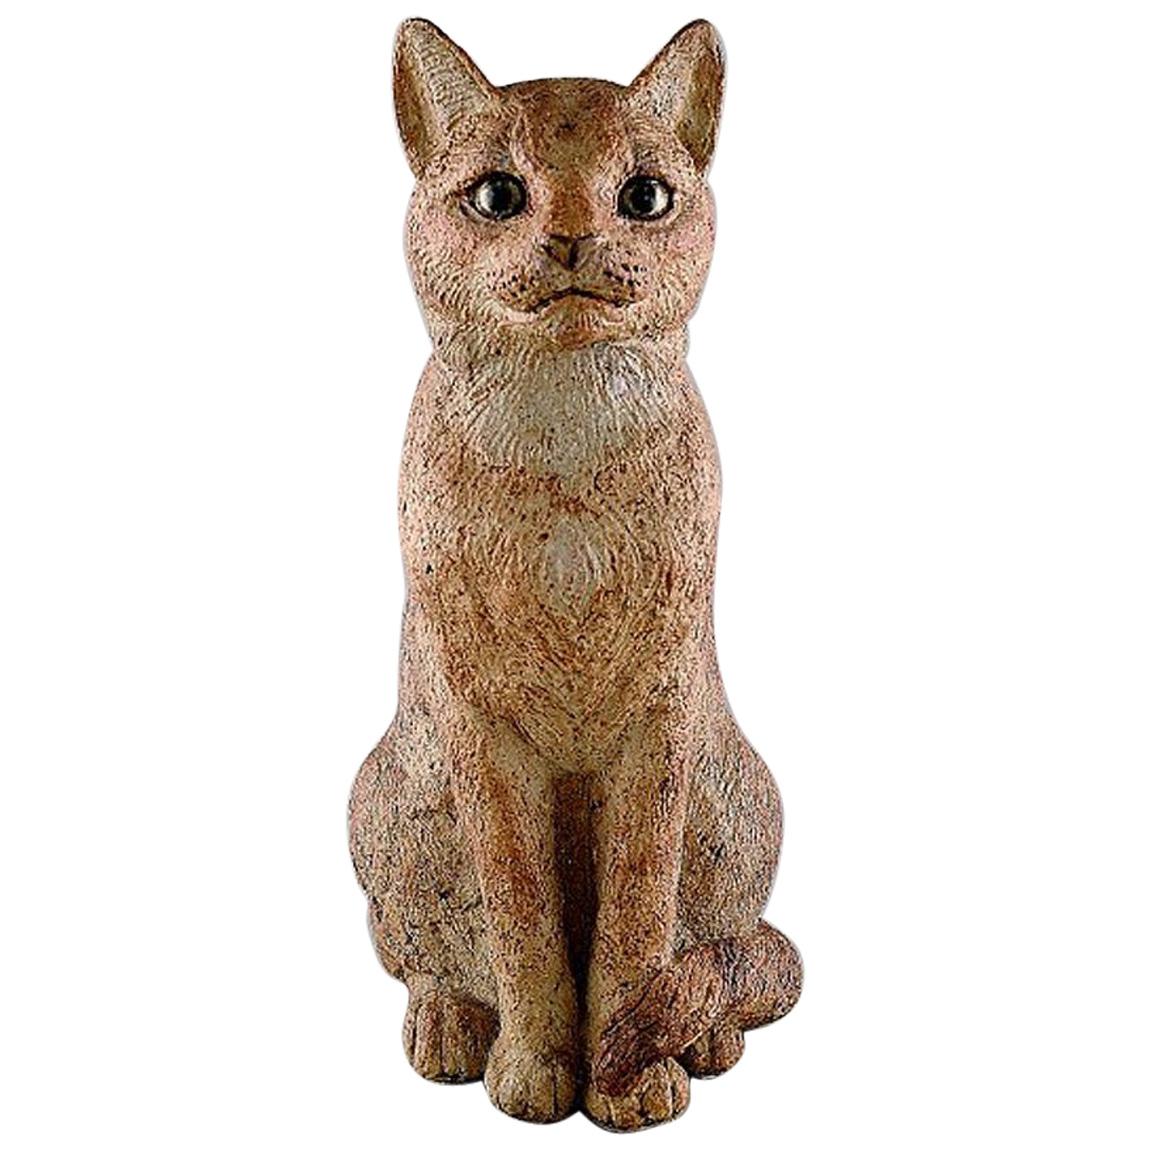 Gudrun Lauesen '1917-2002', Royal Copenhagen, Large Rare Ceramic Sculpture, Cat